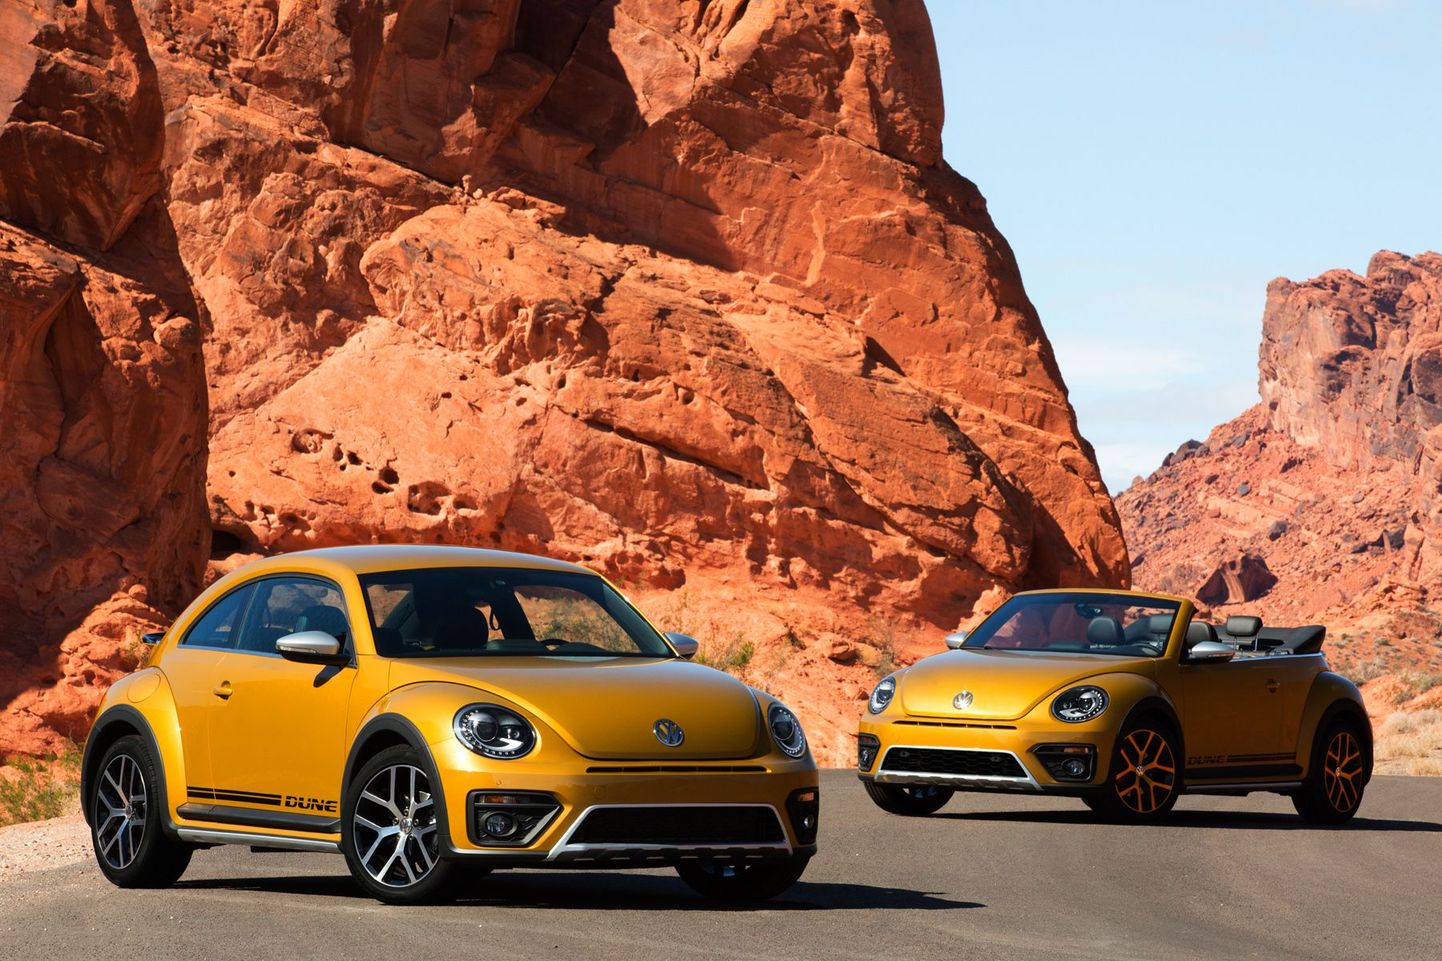 Компания Volkswagen представила внедорожную версию хэтчбека Beetle под названием Dune.